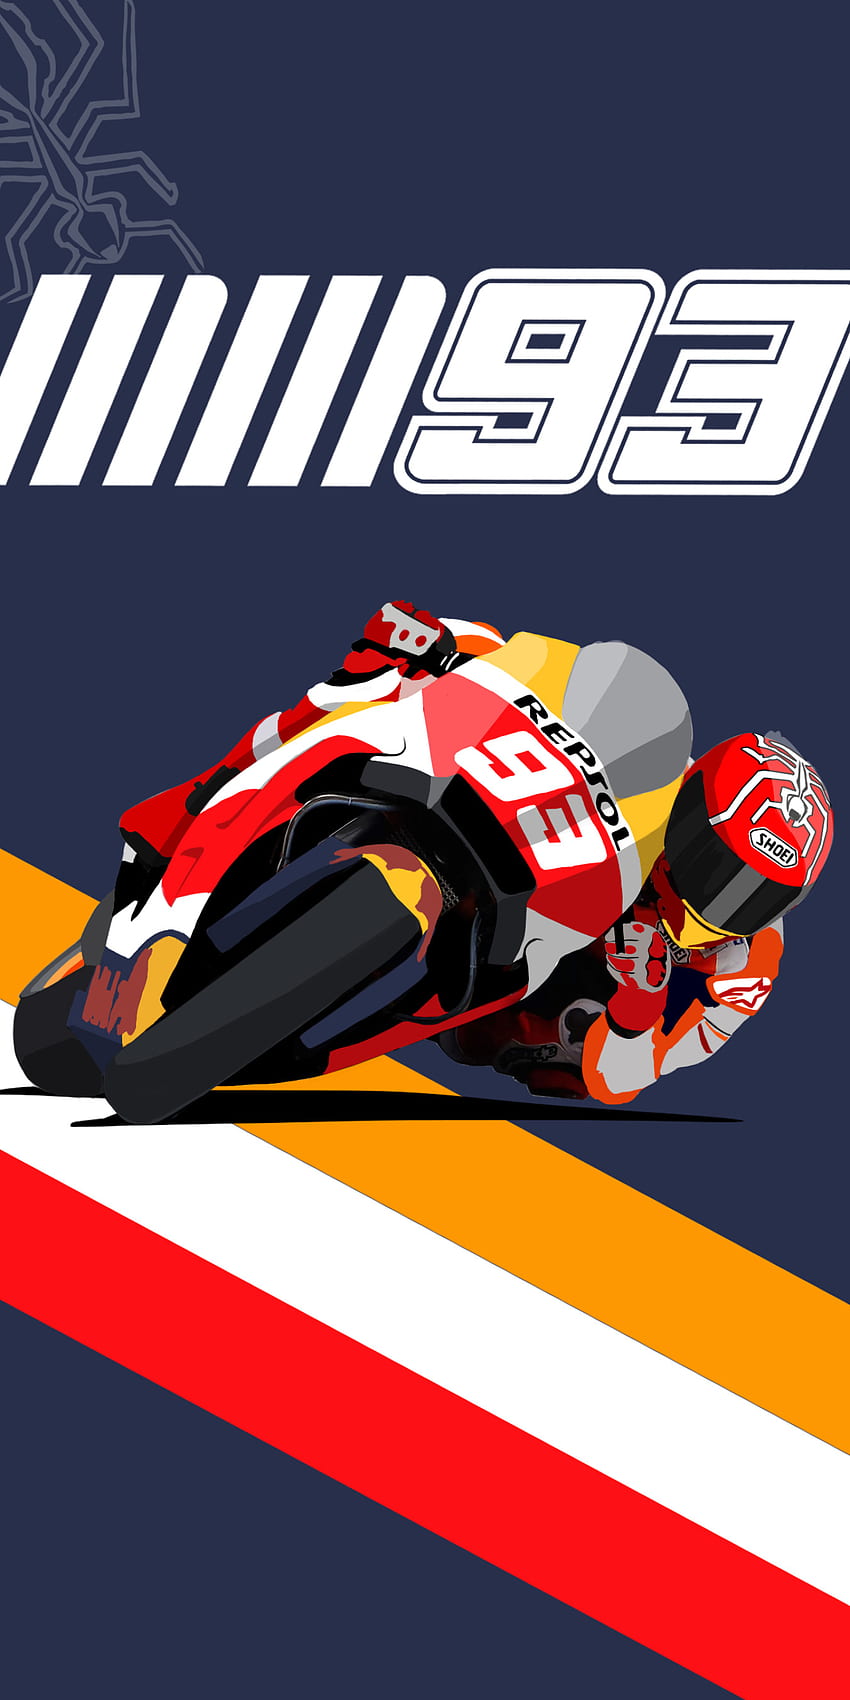 Hice algo hoy! MM93 para todos los fans de Márquez, MotoGP fondo de pantalla del teléfono